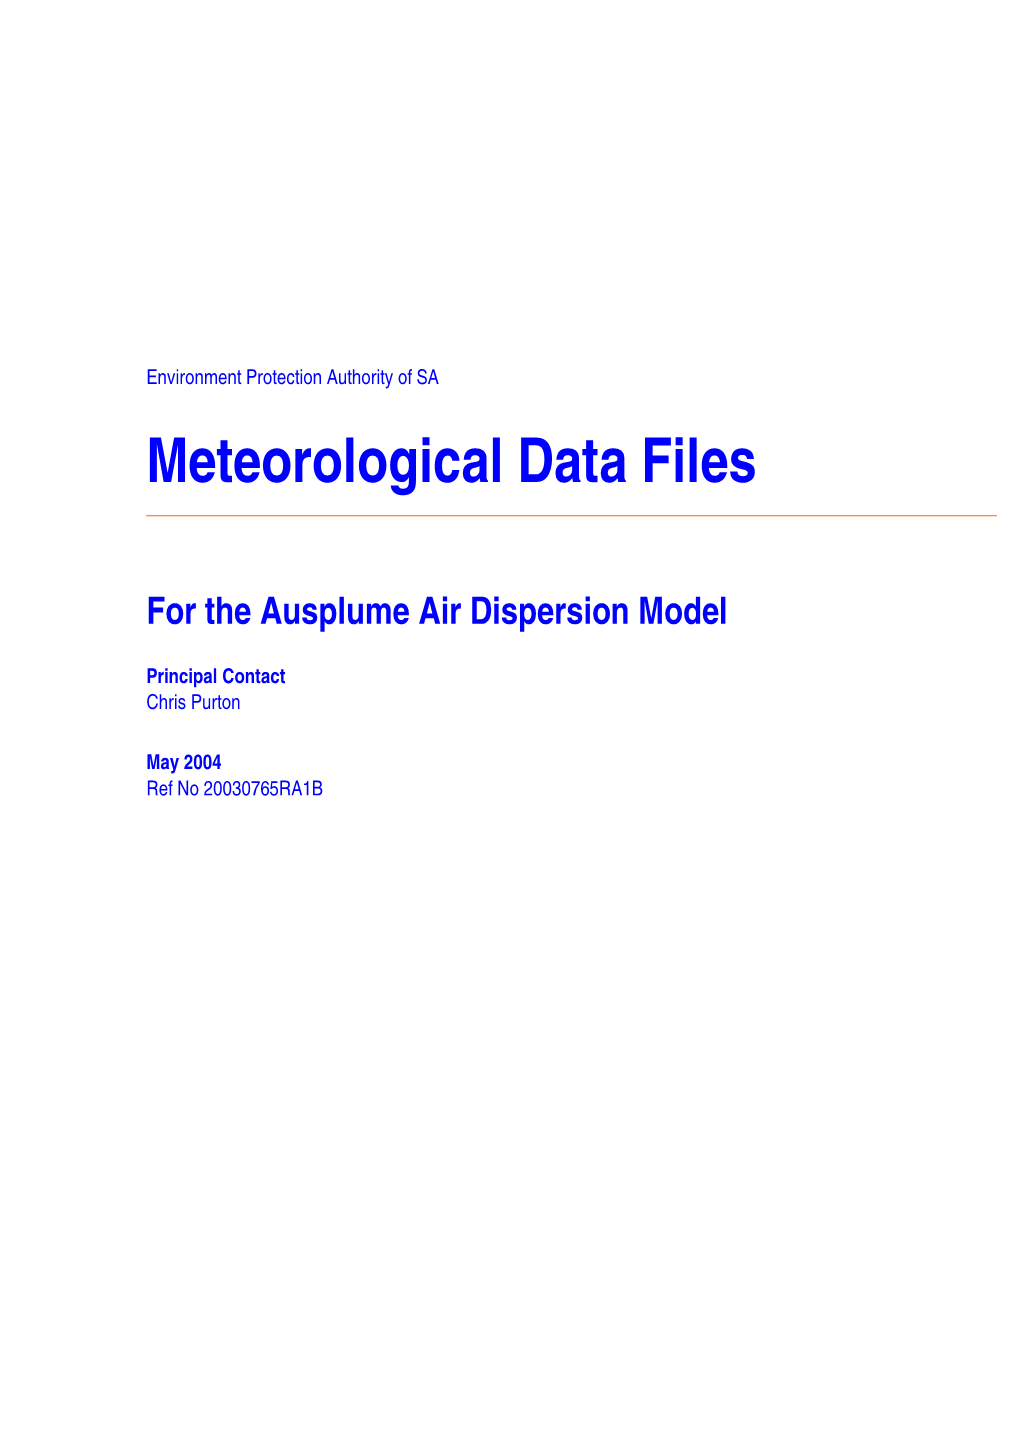 Meteorological Data Files